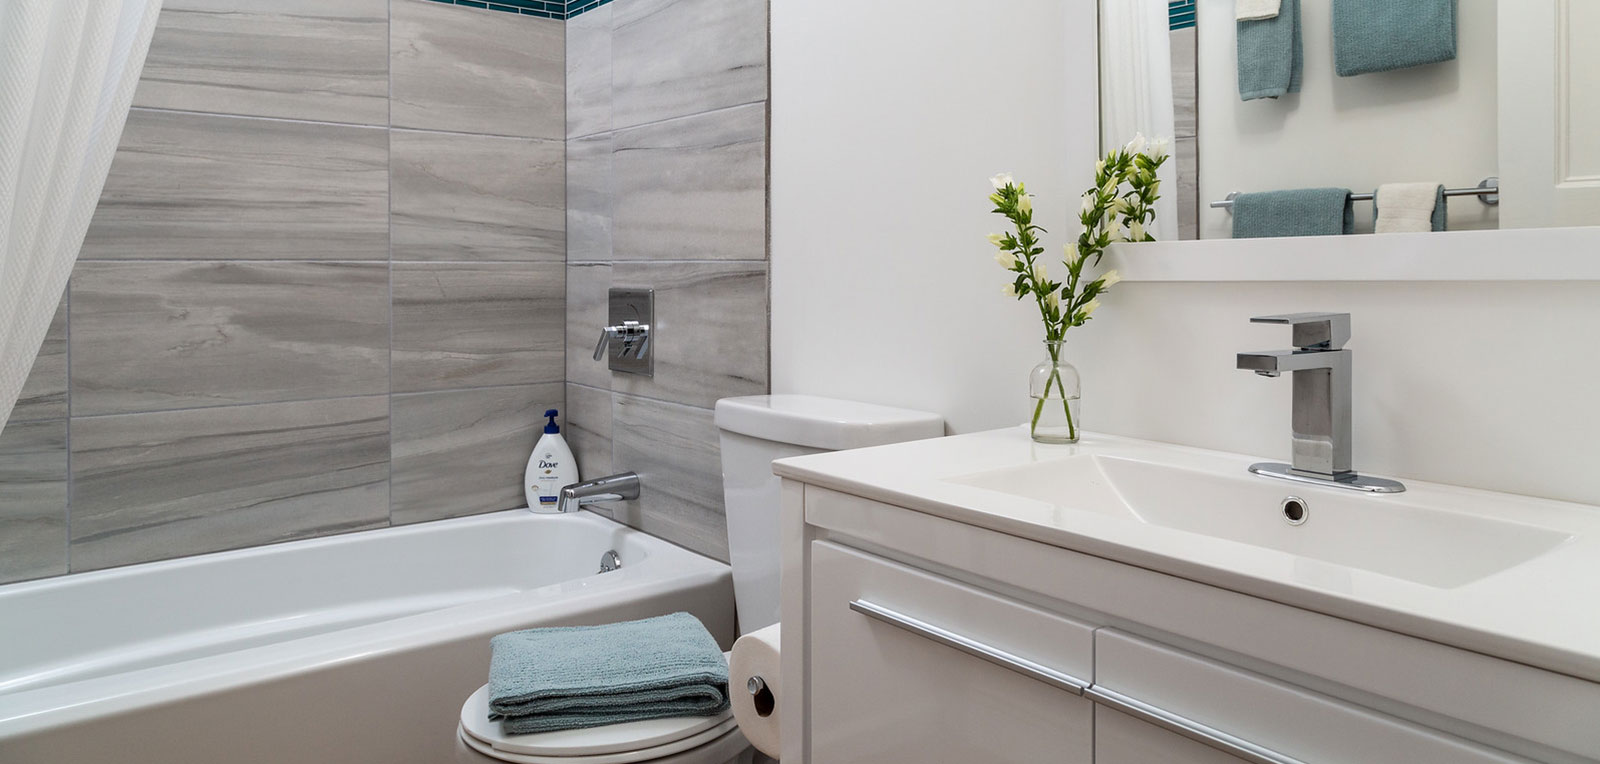 1BR Apartment Bathroom | ADMIRAL SIMS B&B, Newport Rhode Island